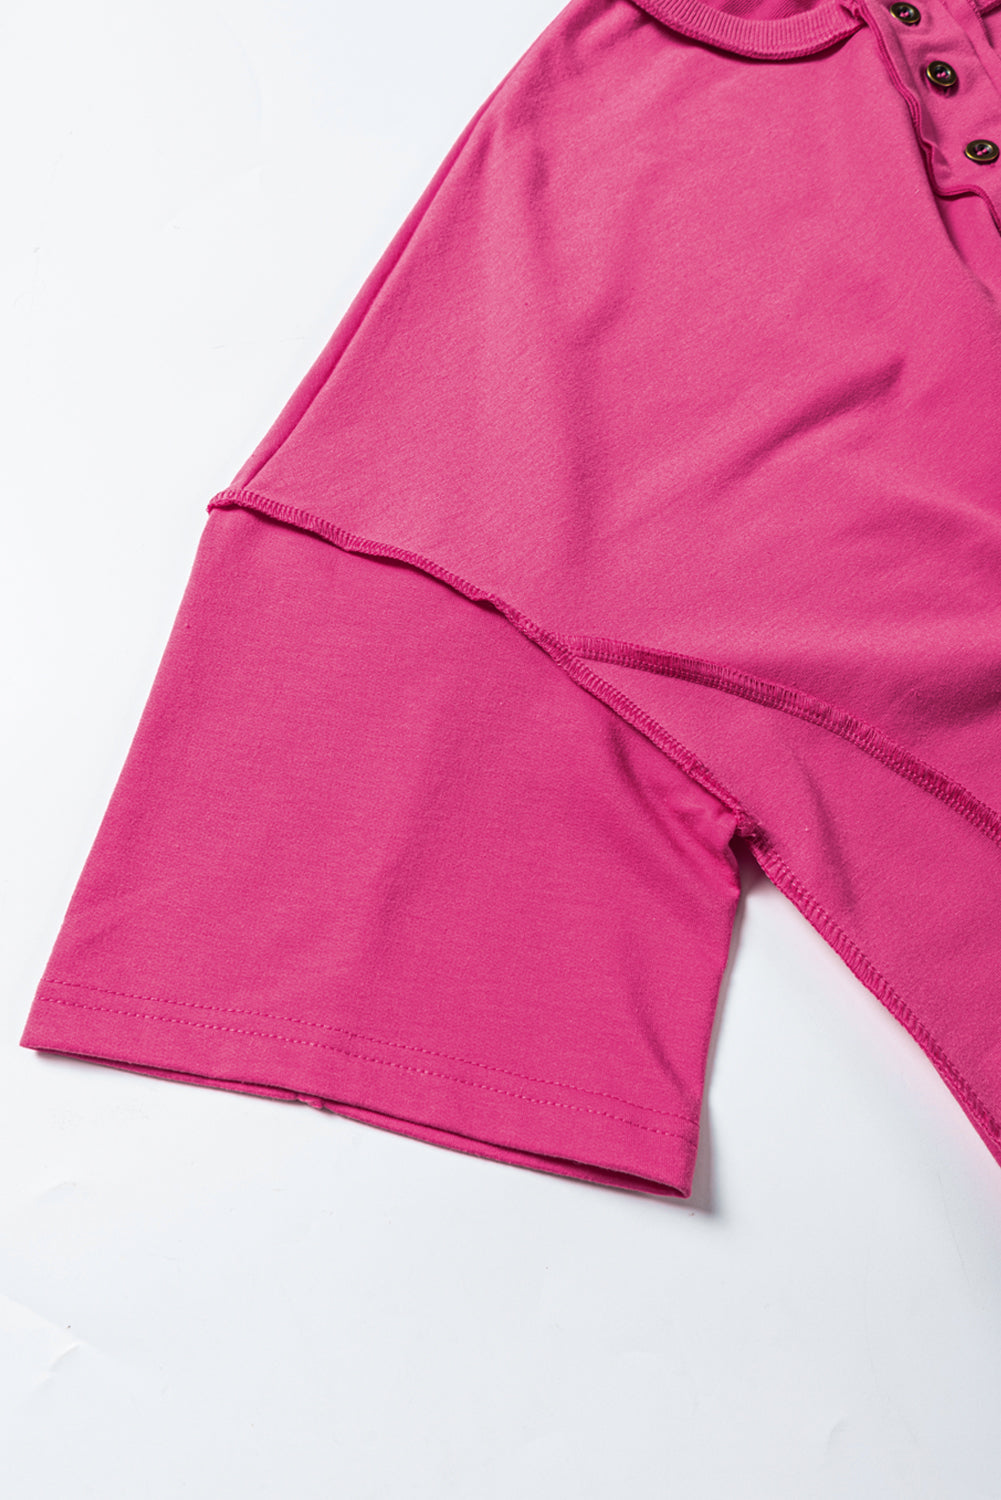 Gornja tunika širokih rukava s ružičastim šavovima i dugmadima